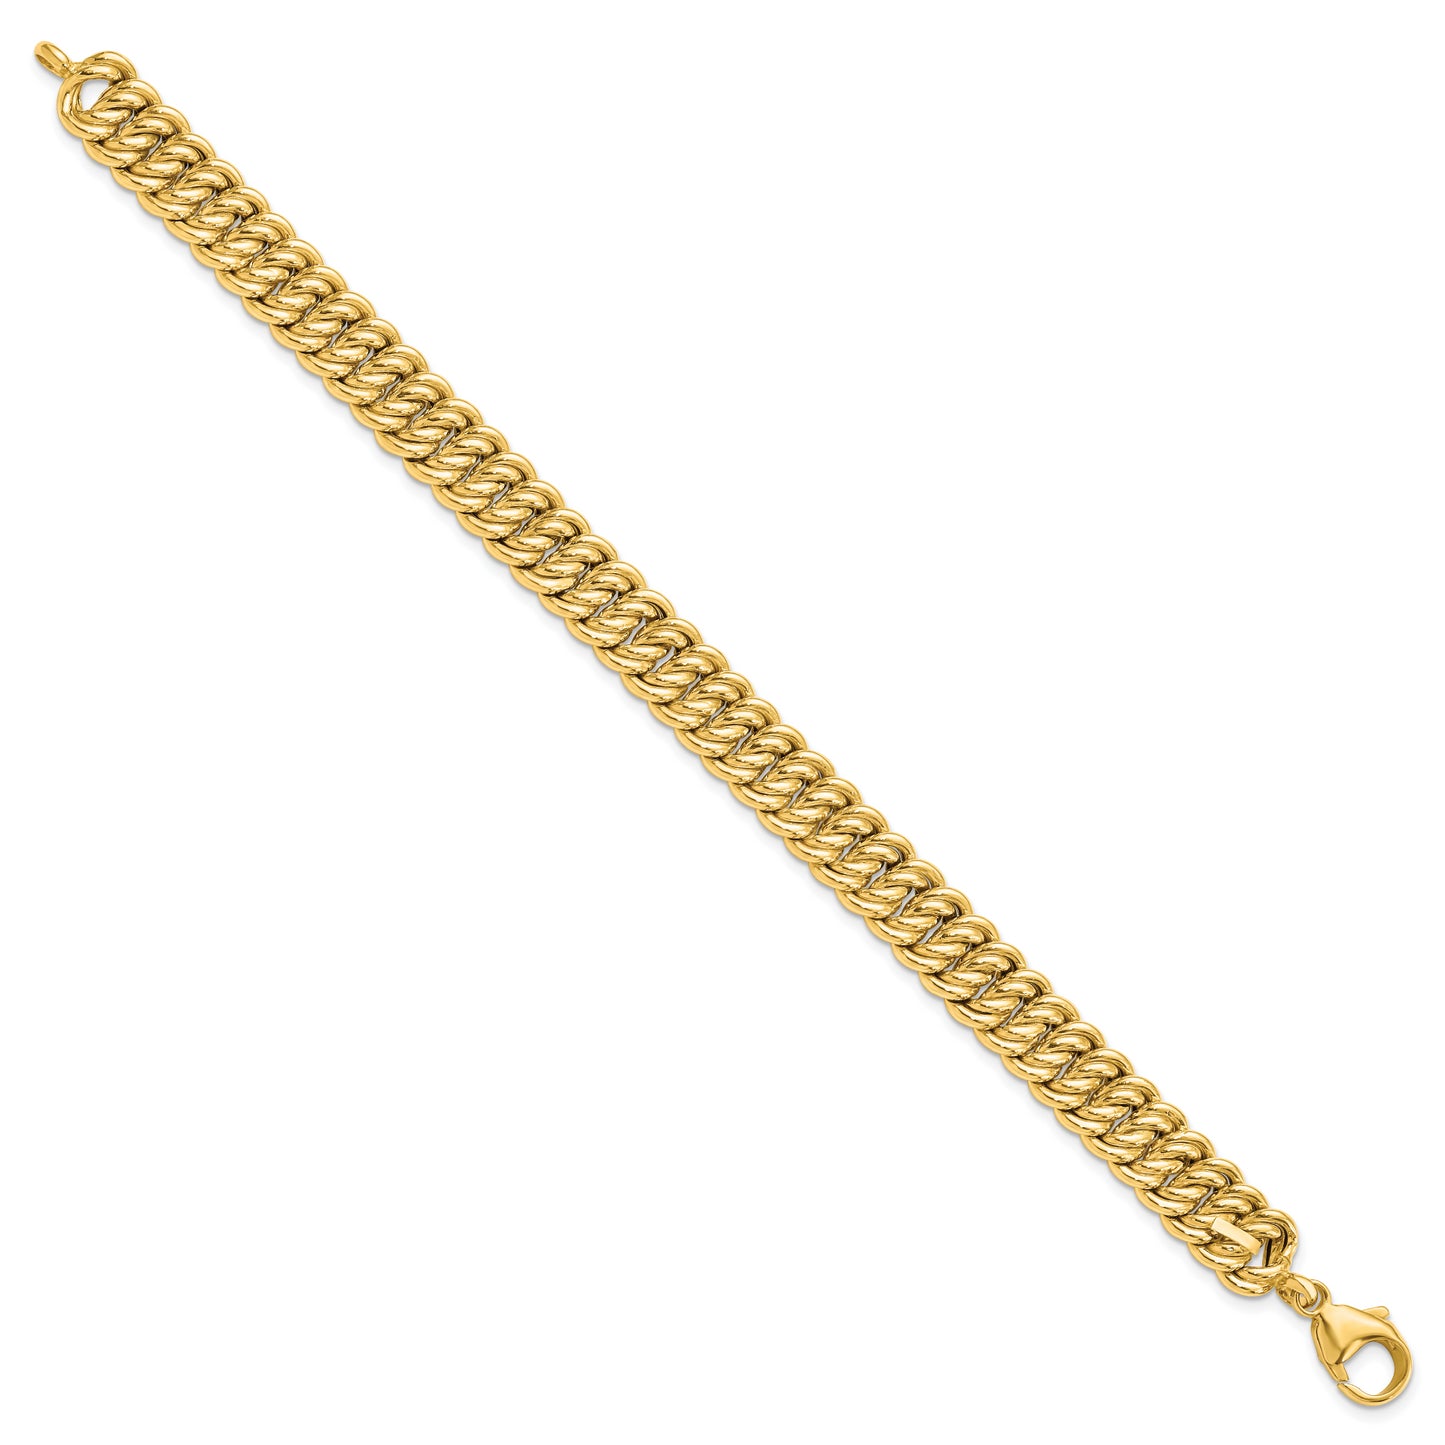 Leslie's 14K Gold Rhodium-plated Fancy Link Bracelet